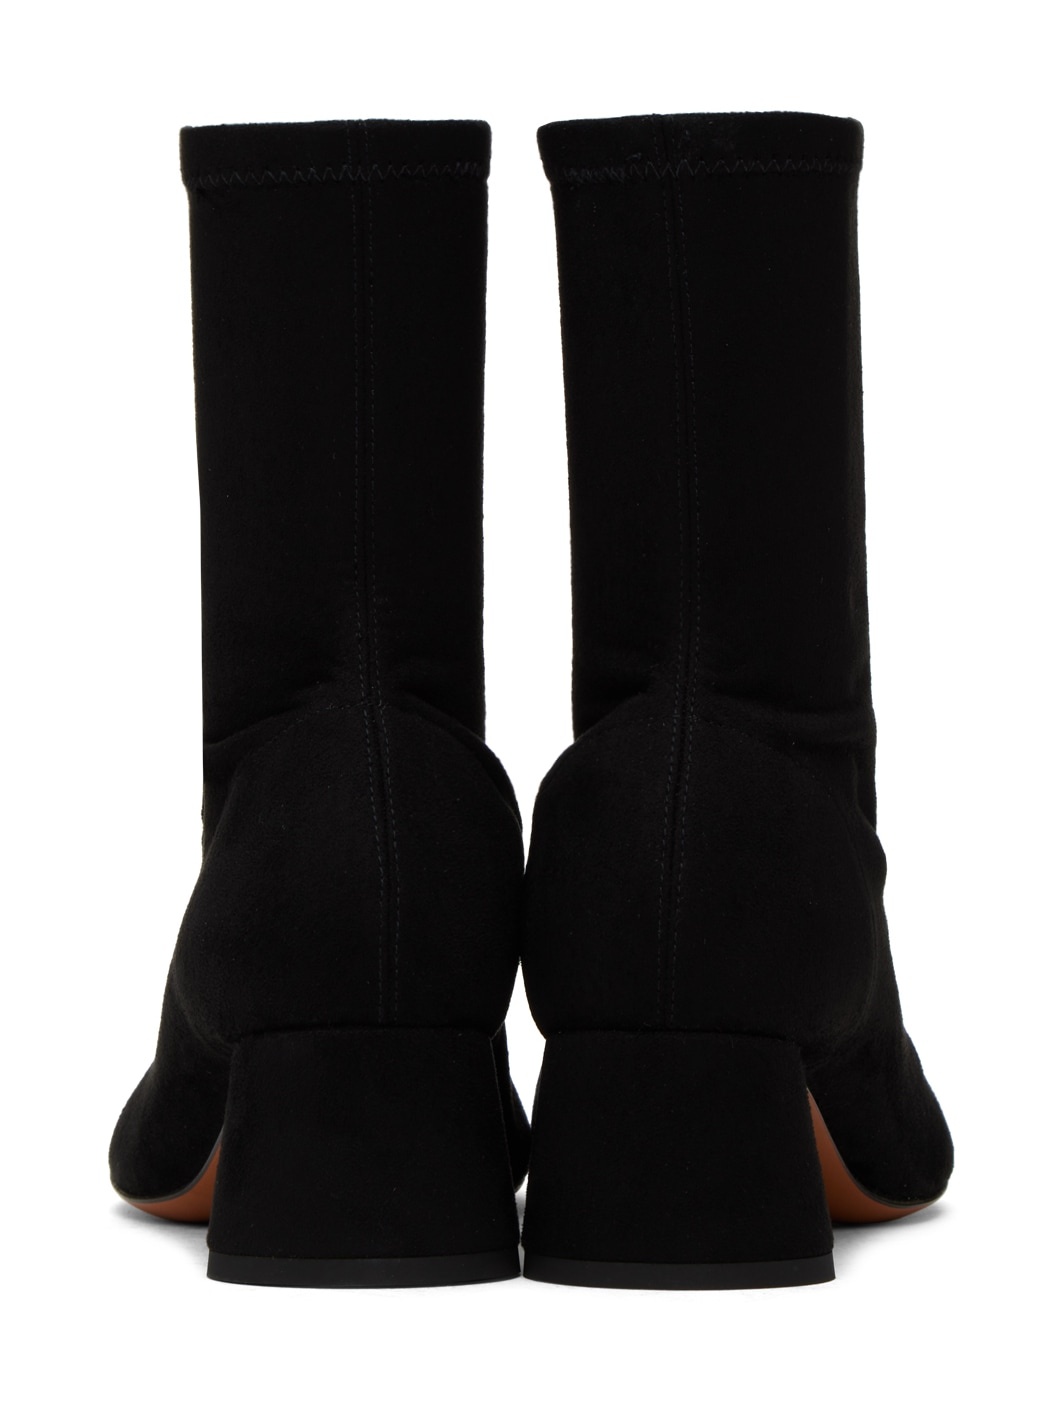 Black Glove Stretch Boots - 2